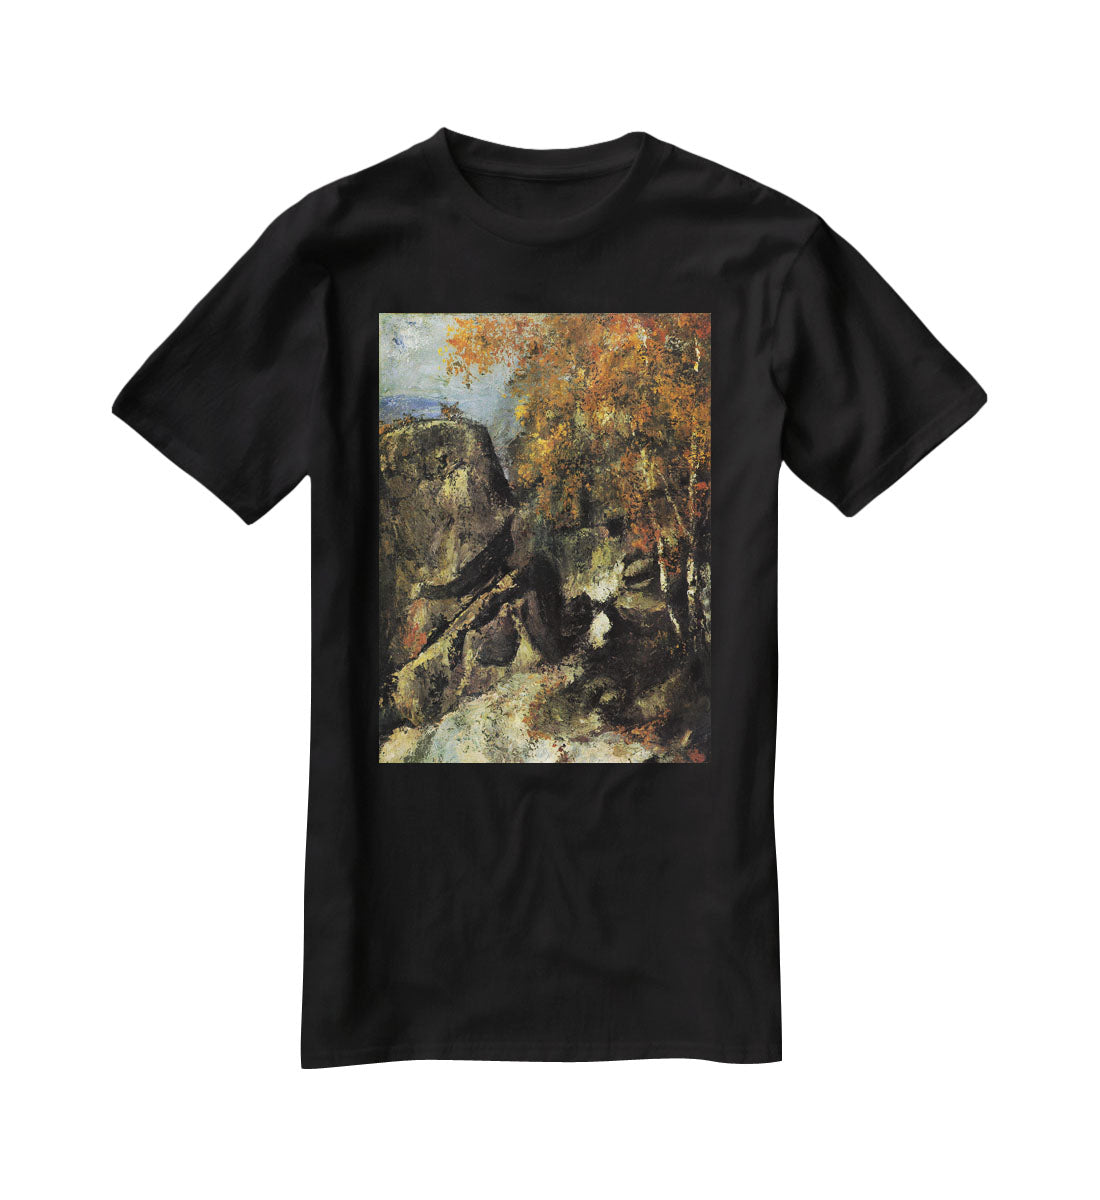 Rocks in Fountanbleu Forest by Cezanne T-Shirt - Canvas Art Rocks - 1